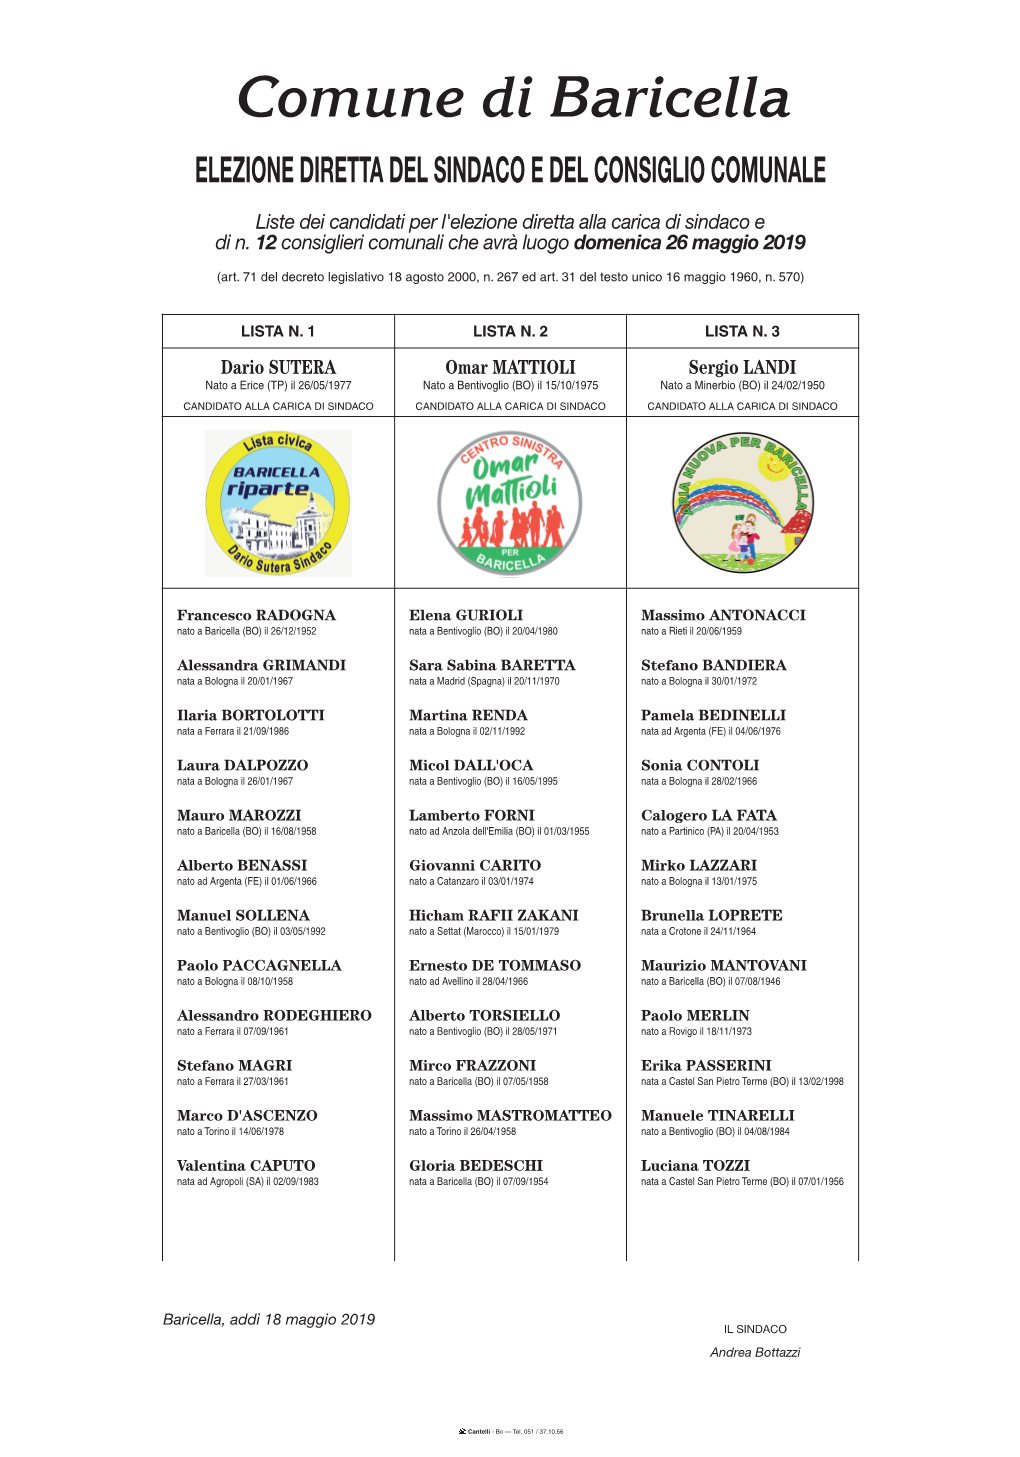 Liste Dei Candidati Per L'elezione Diretta Alla Carica Di Sindaco E Di N. 12 Consiglieri Comunali Che Avrà Luogo Domenica 26 Maggio 2019